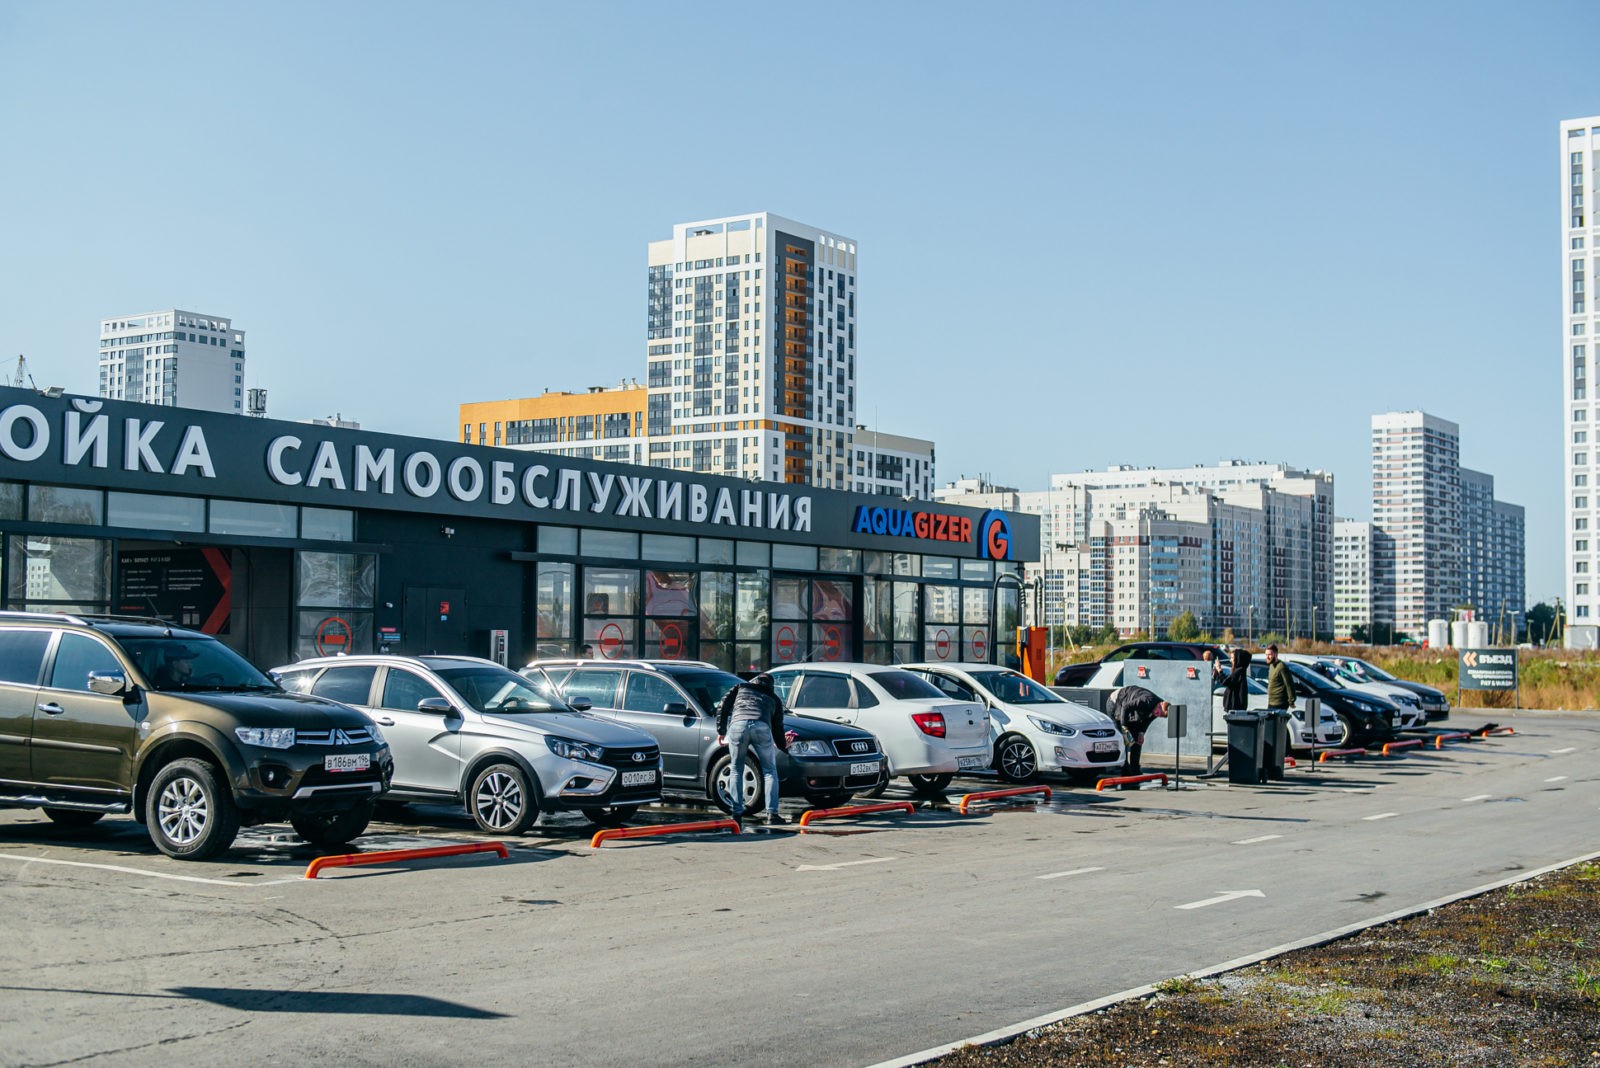 Автомойки самообслуживания <br> с прибылью до 21.000.000 руб. в год